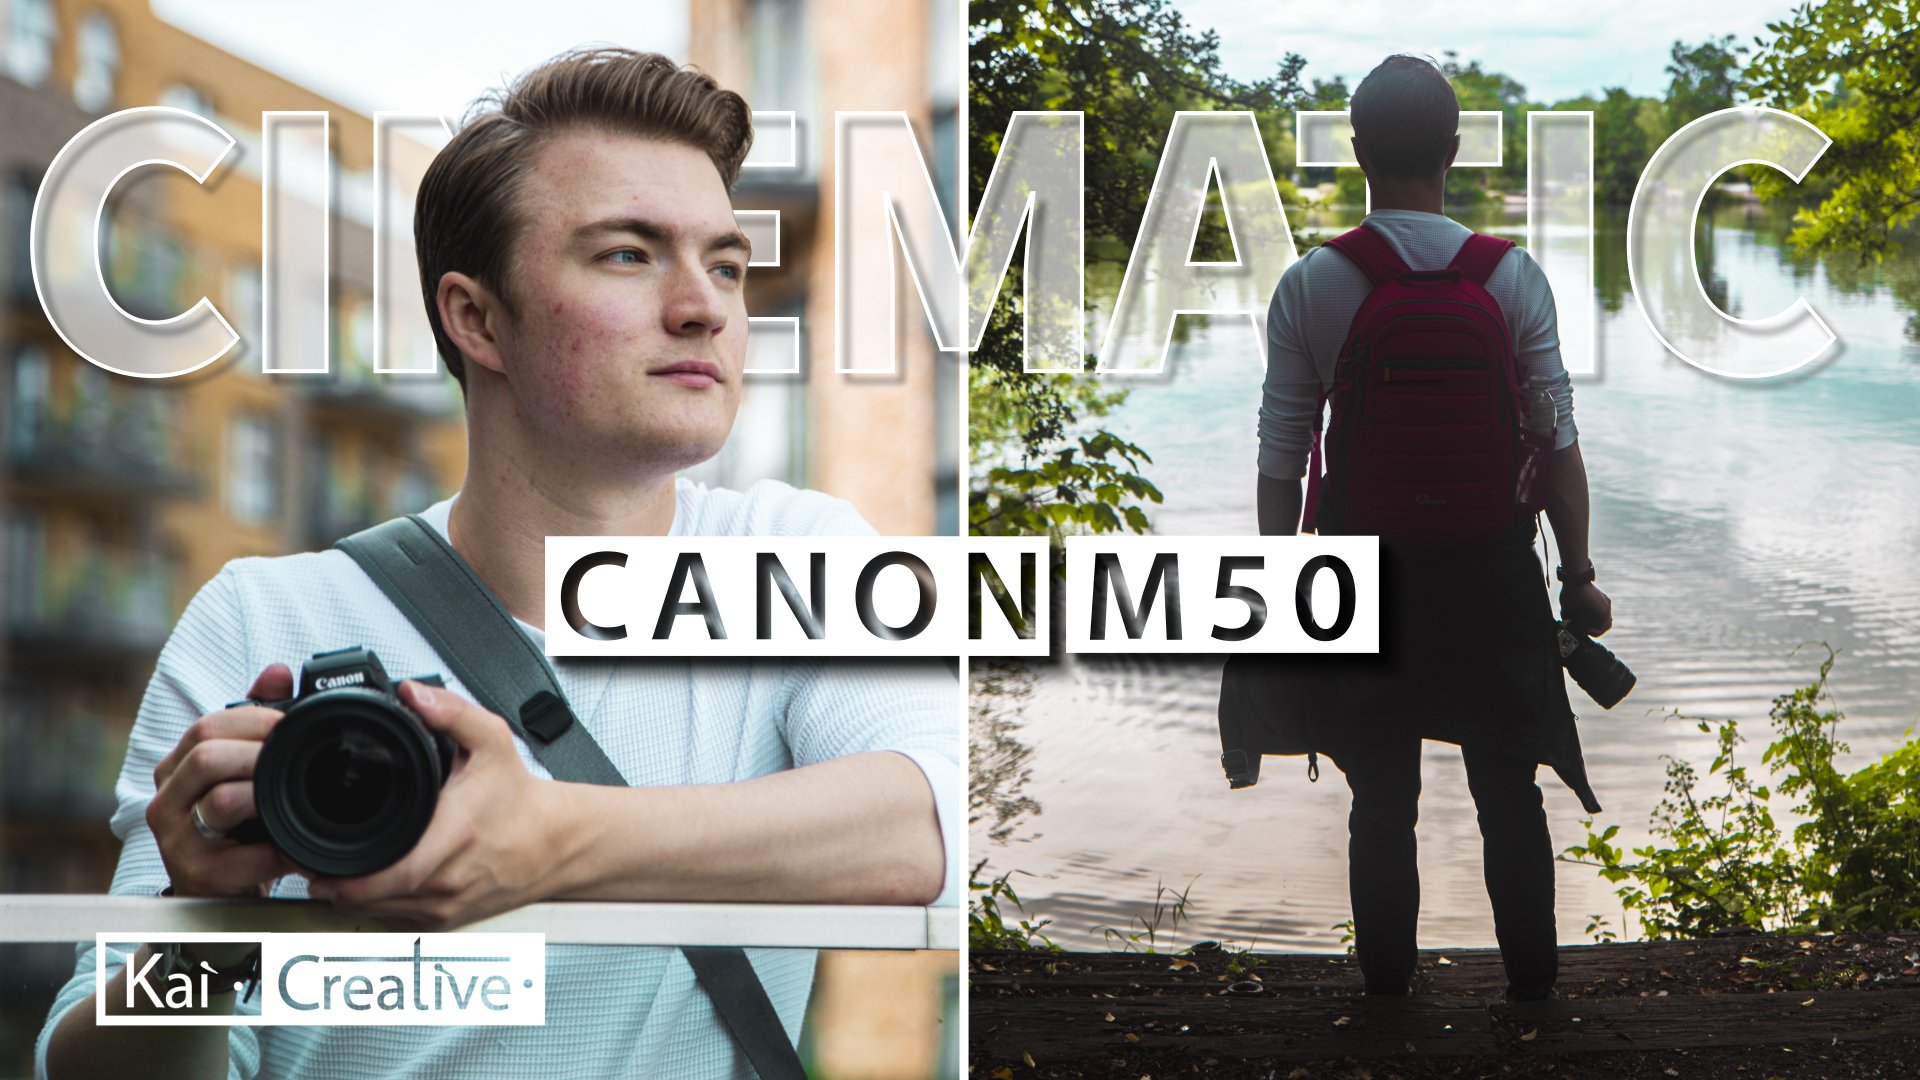 آموزش فیلم سینمایی آسان با استفاده از Canon M50 | ده نکته برتر